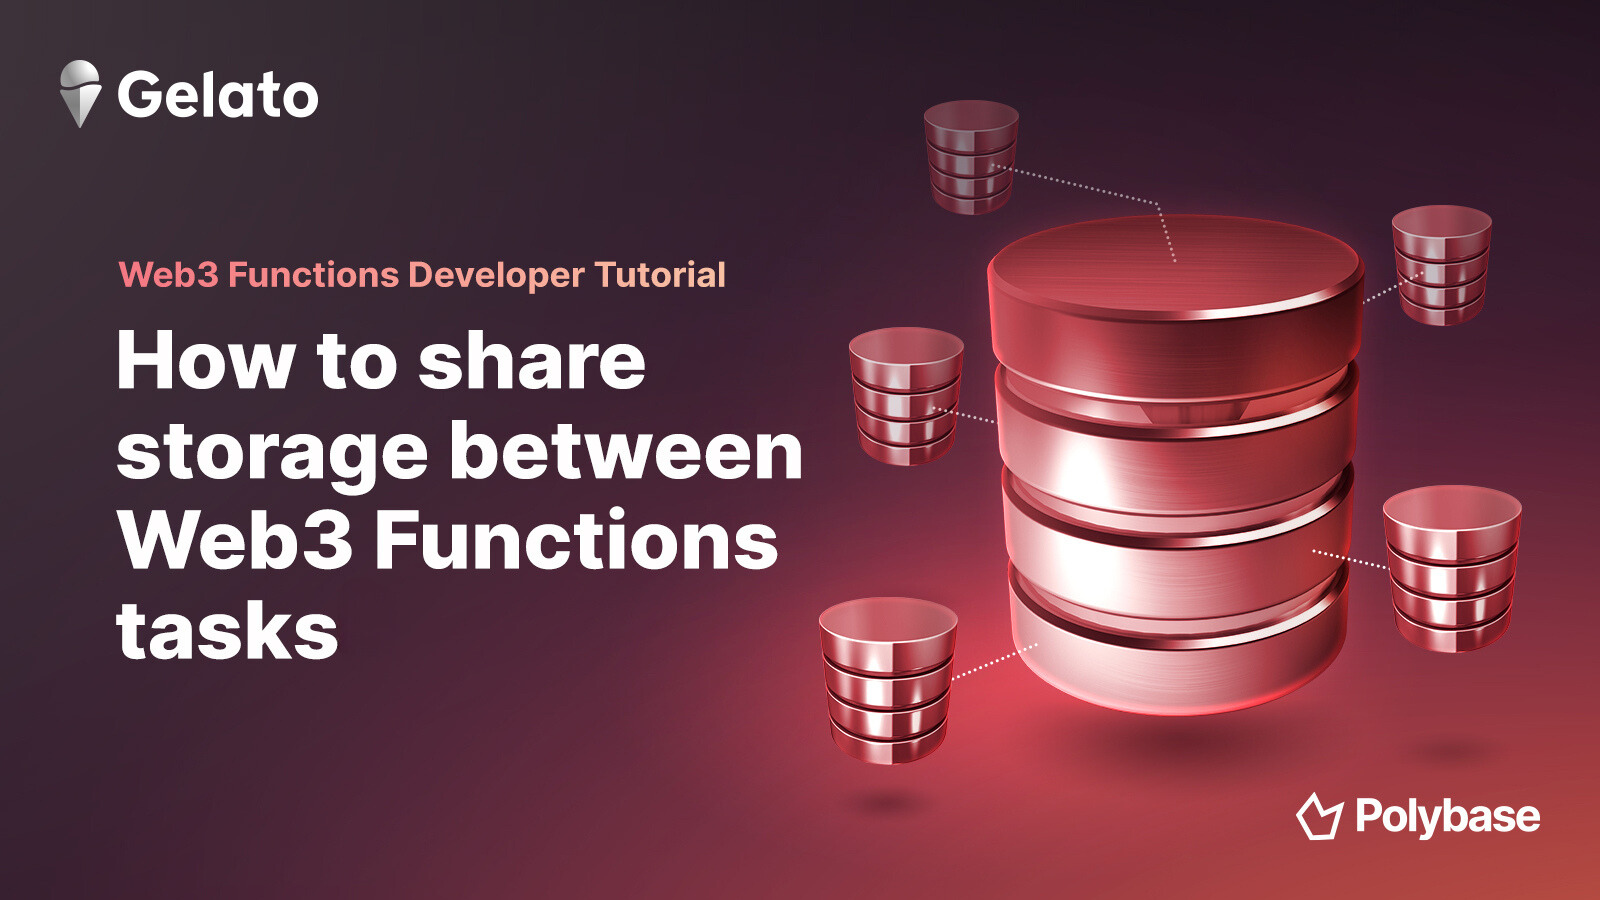 Sharing Storage Between Web3 Functions Tasks